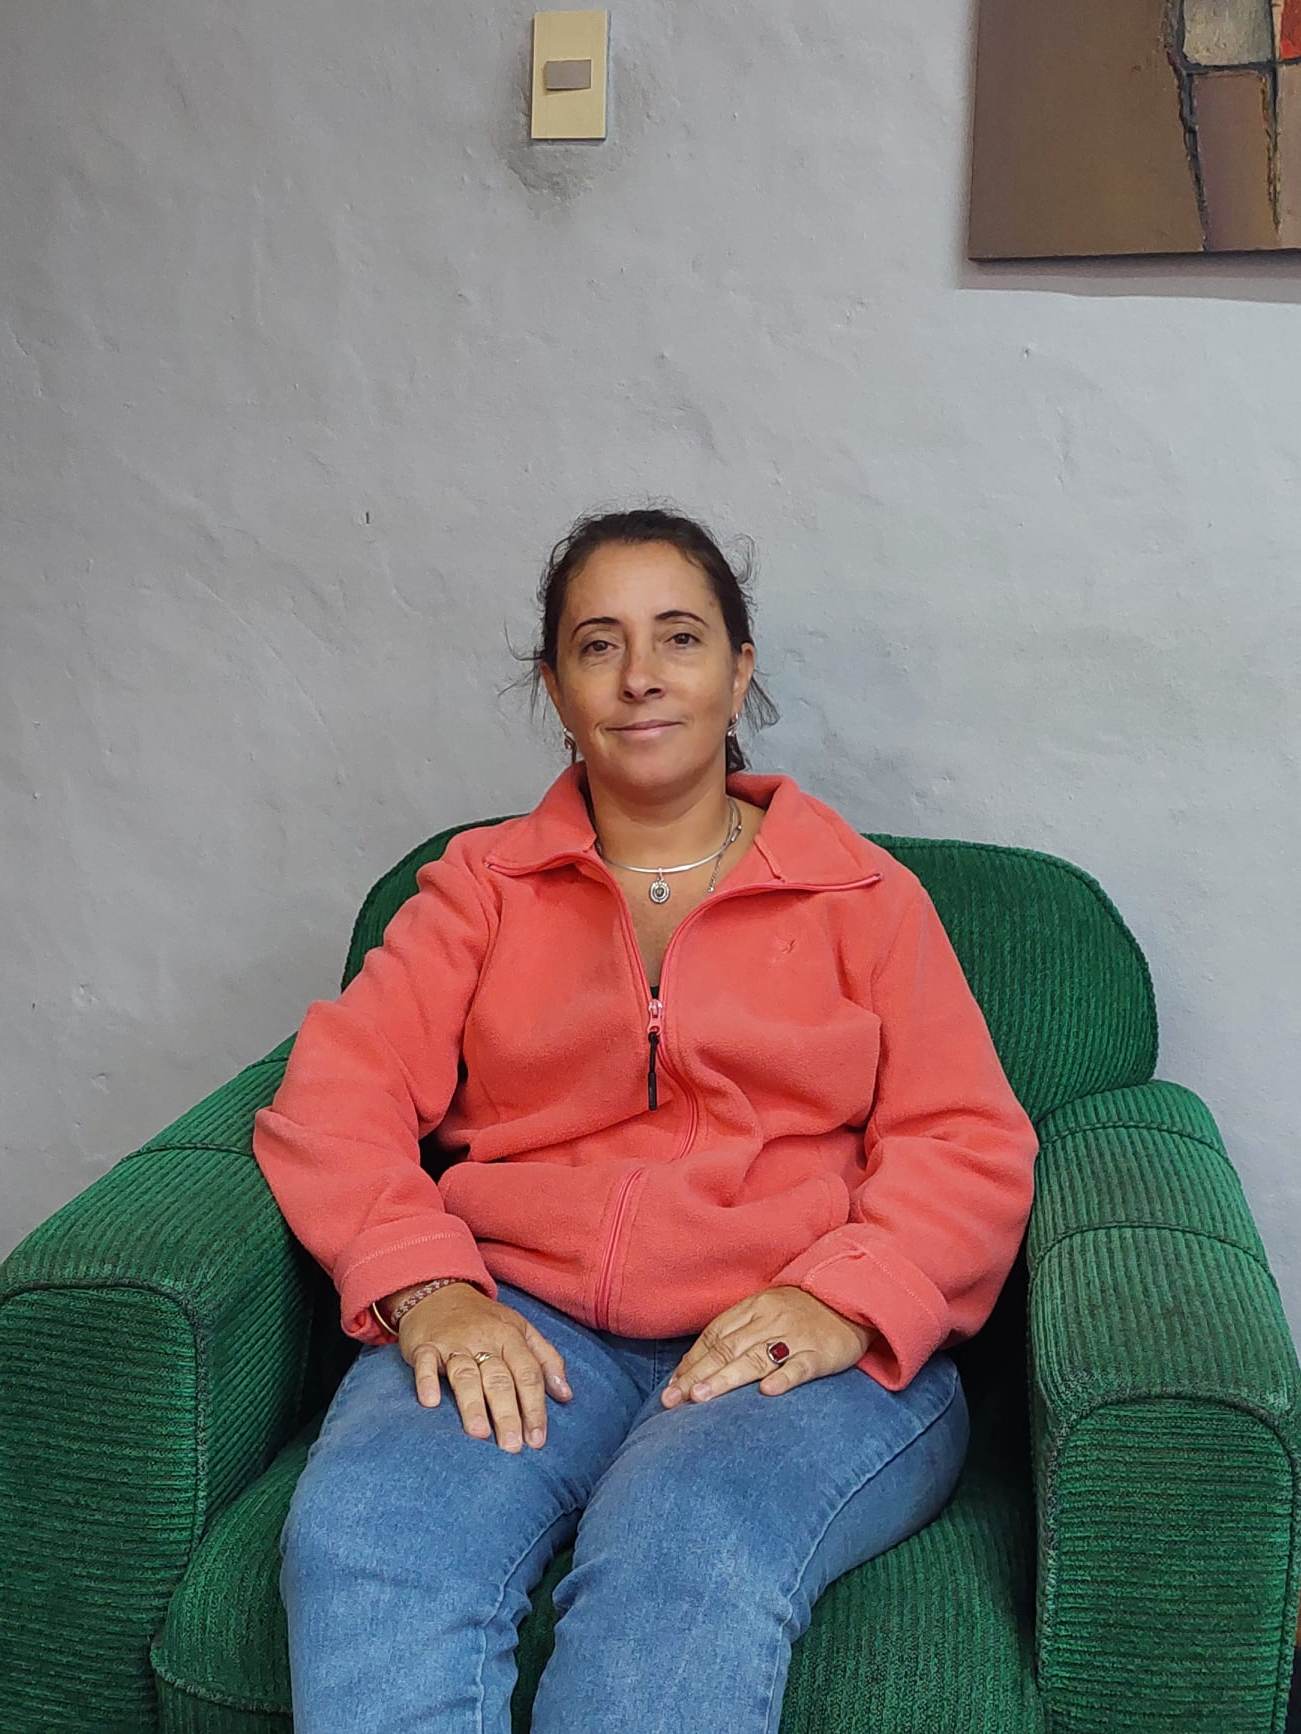 Betania De Souza: al rescate en la recuperación de monumentos y edificios históricos y patrimoniales